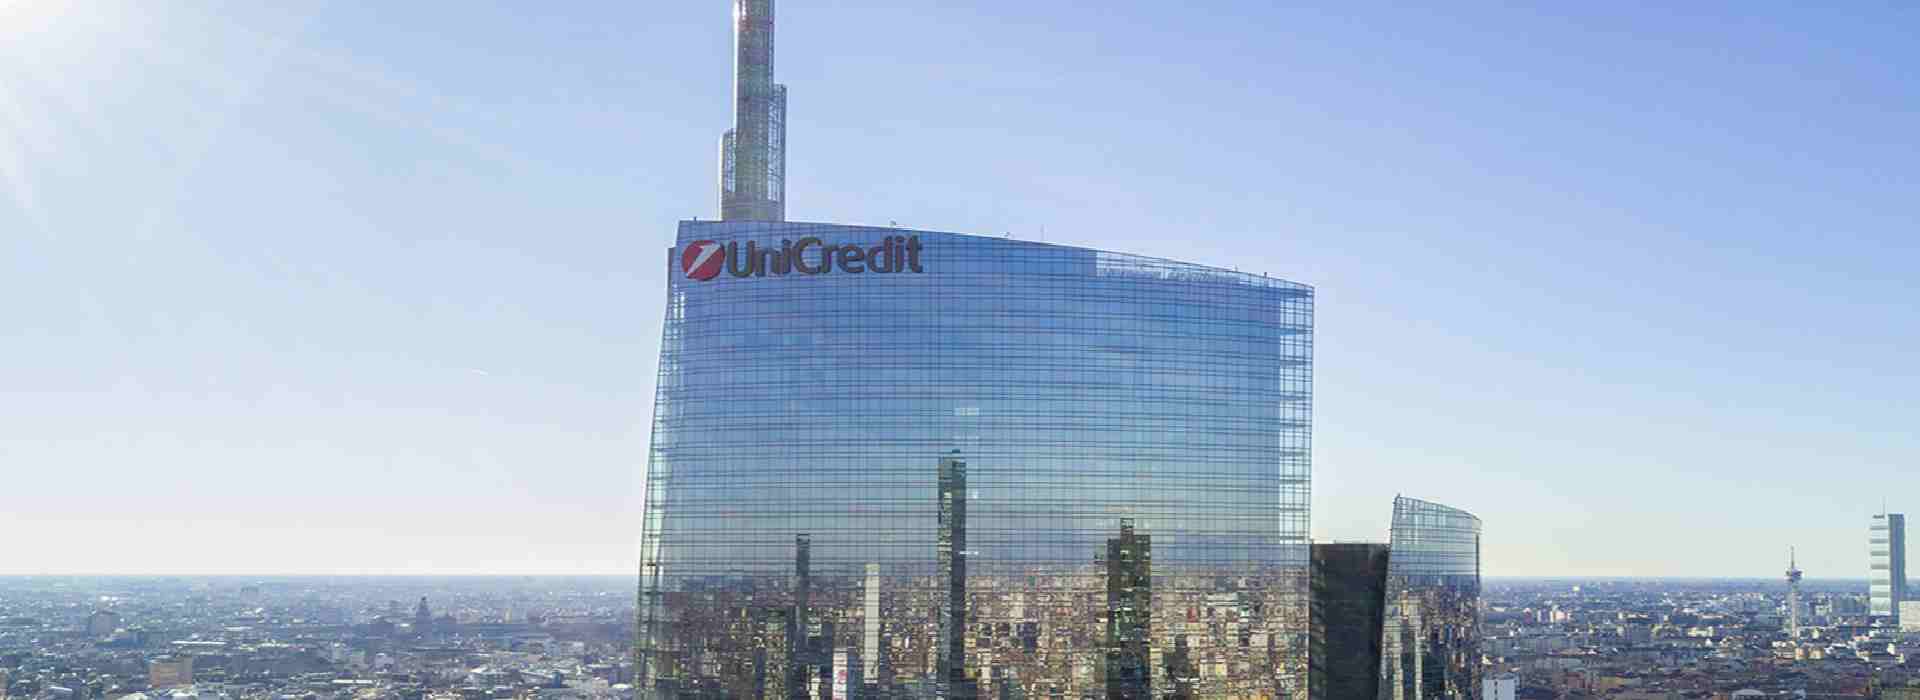 L'Unione europea multa Unicredit per quasi 70 milioni di euro per cartello trading